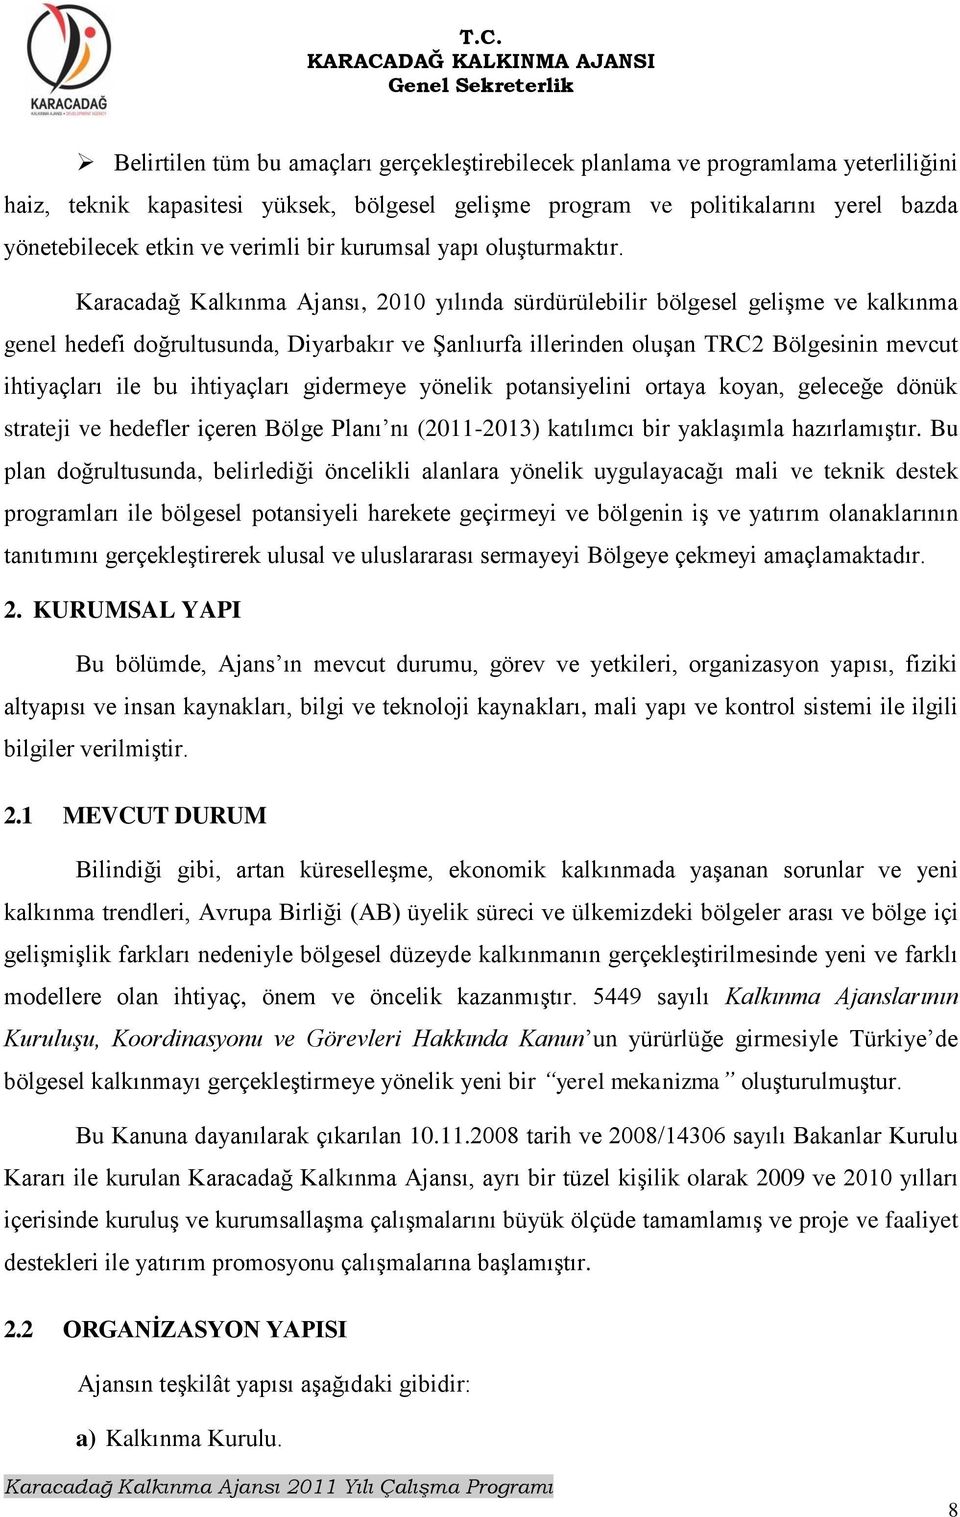 Karacadağ Kalkınma Ajansı, 2010 yılında sürdürülebilir bölgesel geliģme ve kalkınma genel hedefi doğrultusunda, Diyarbakır ve ġanlıurfa illerinden oluģan TRC2 Bölgesinin mevcut ihtiyaçları ile bu